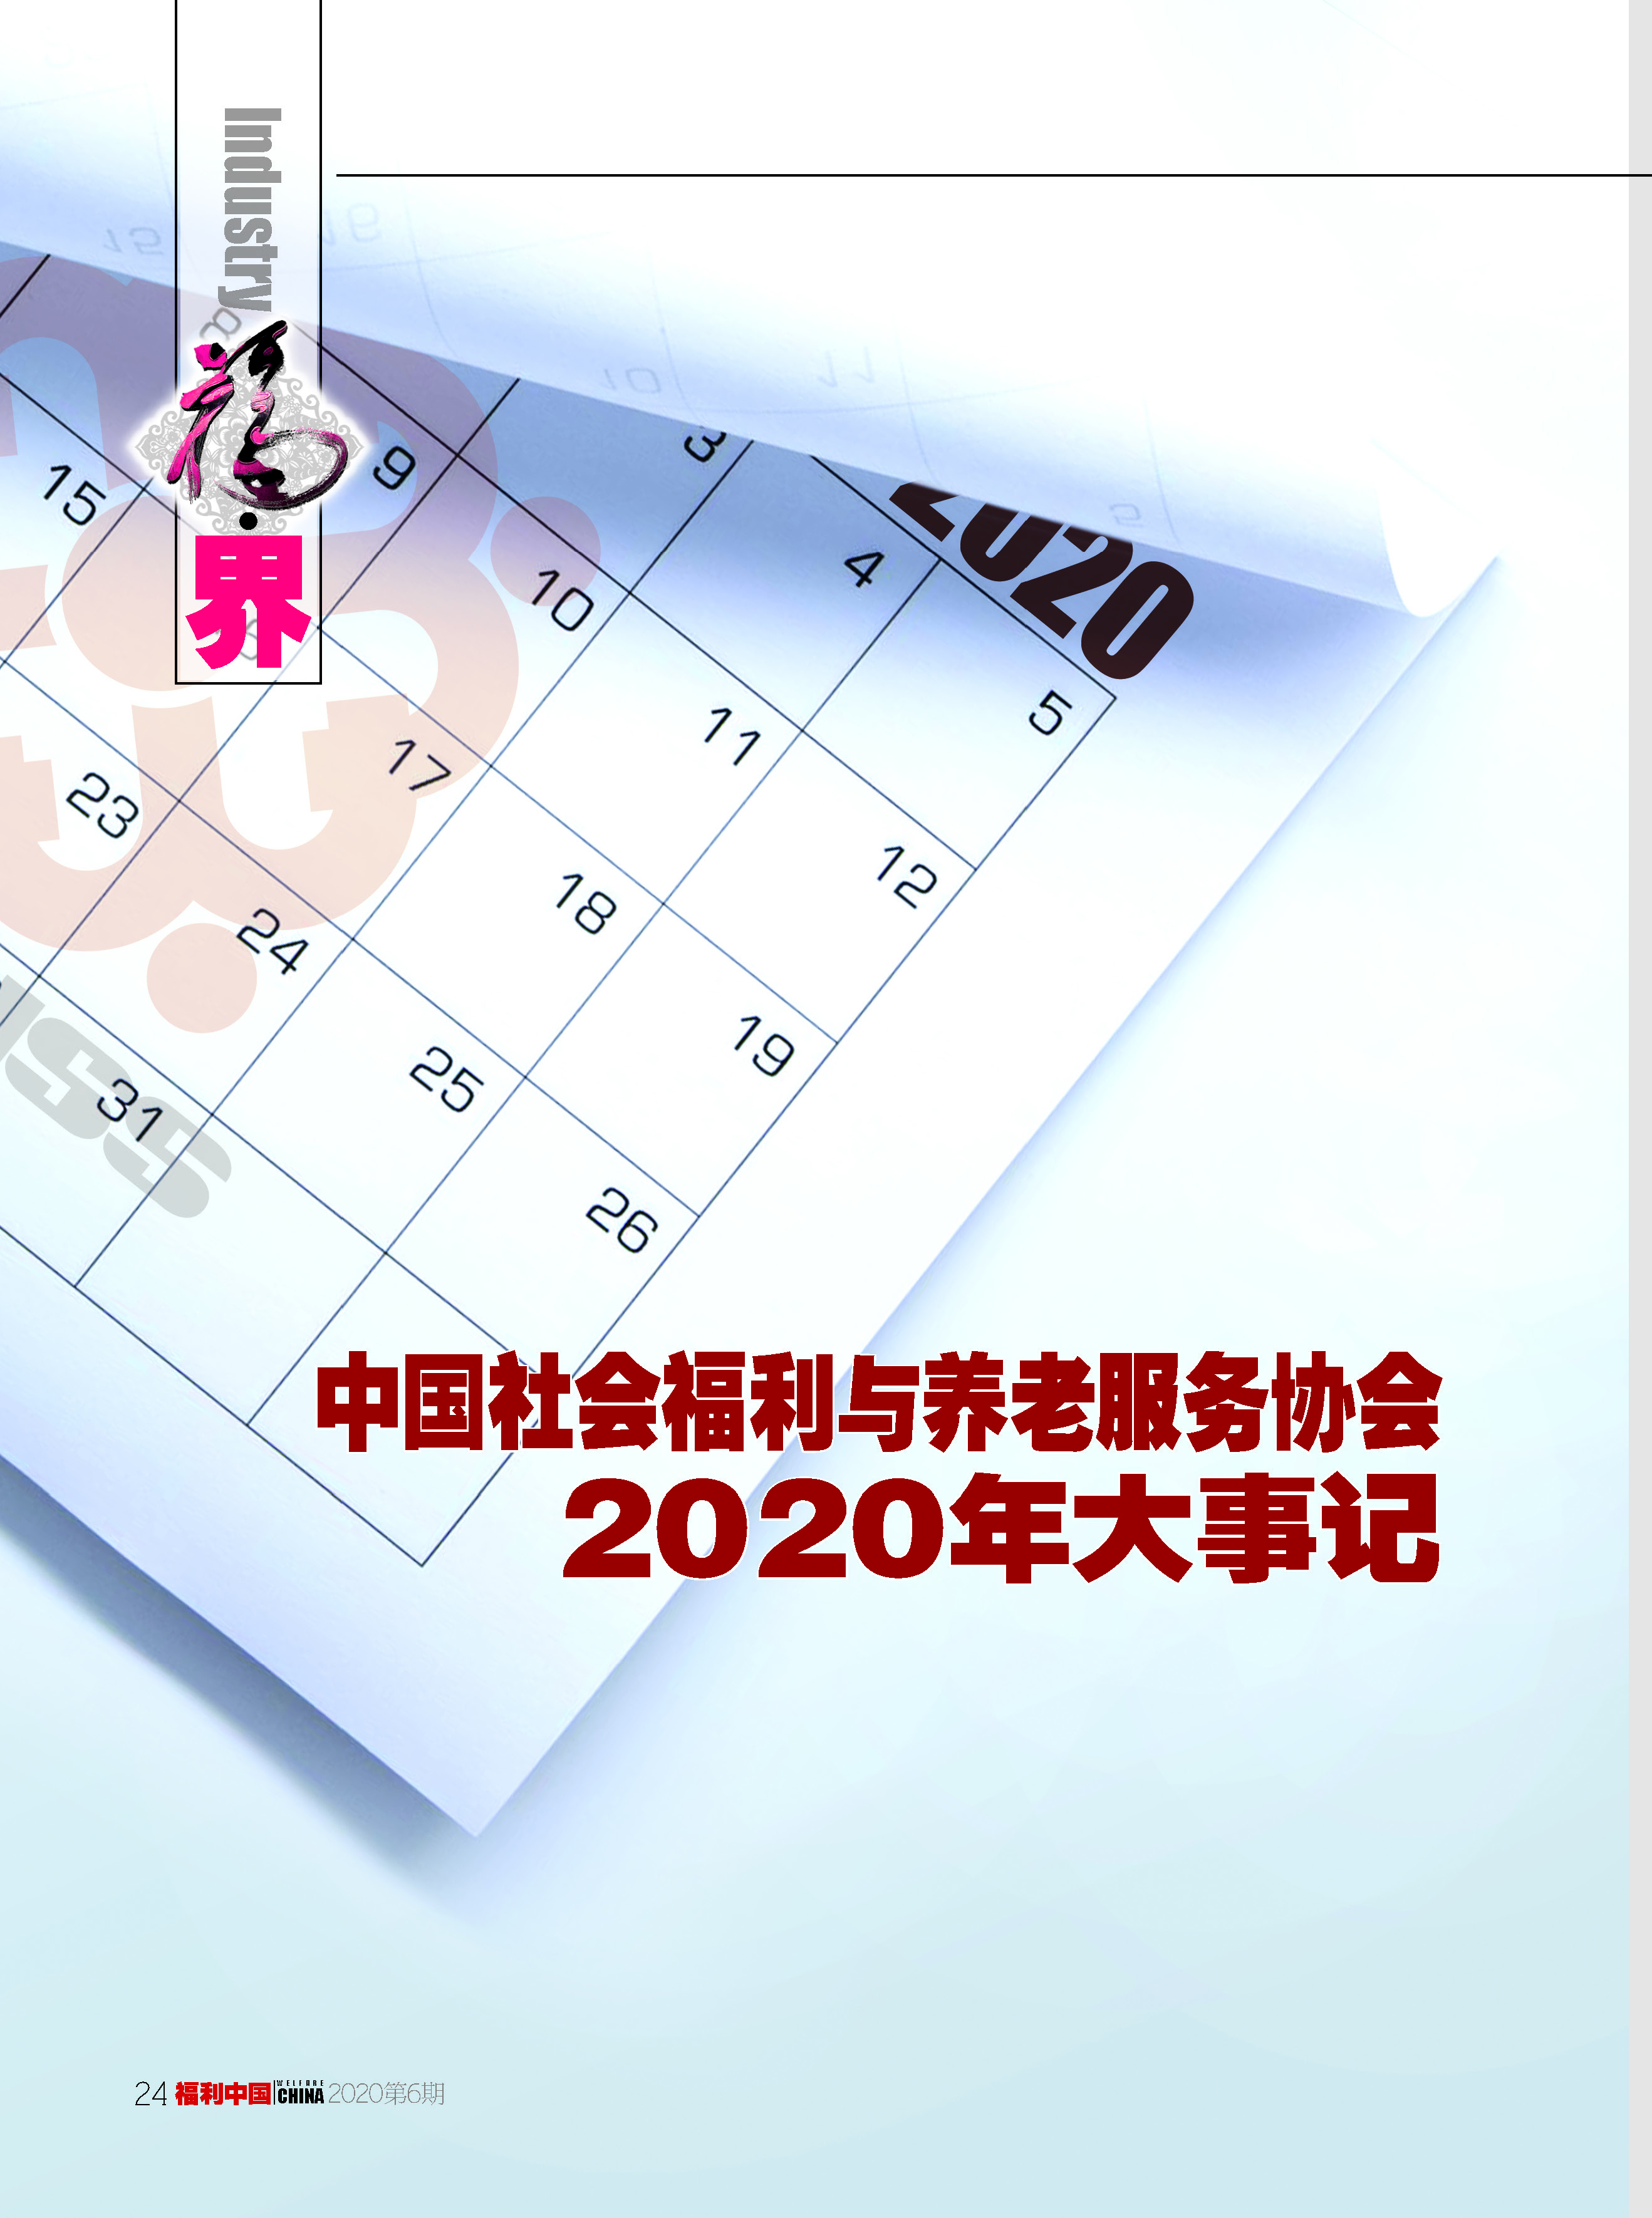 福利中国2020年6期内文_页面_24.jpg